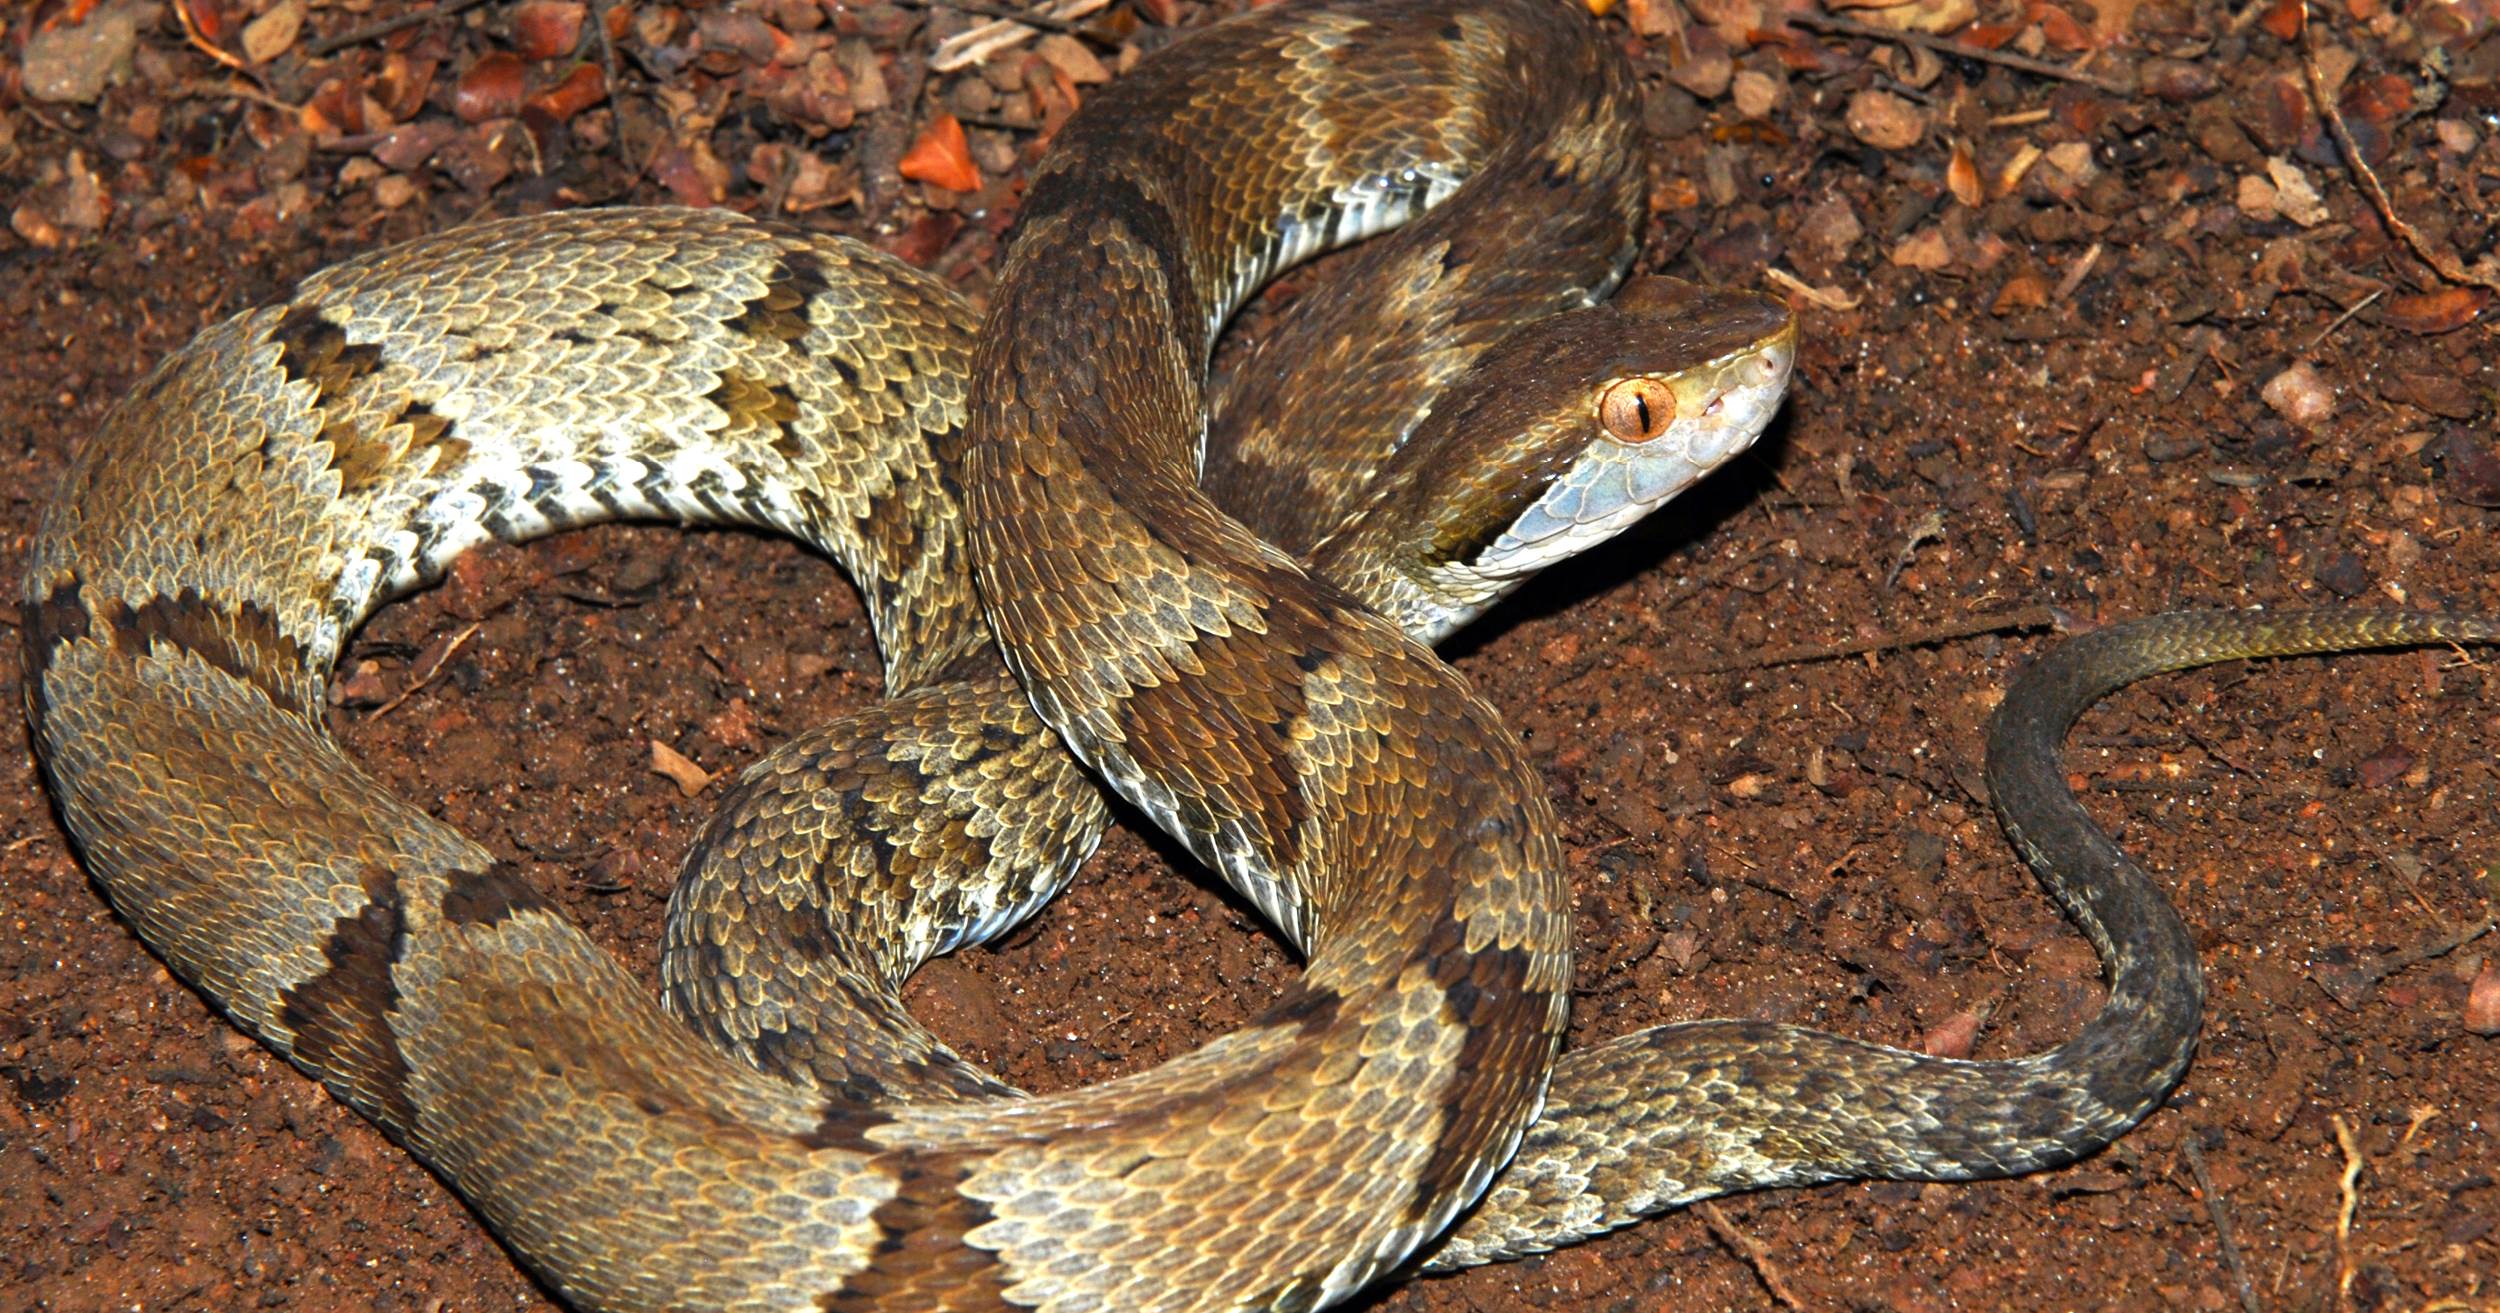 Cobras brasileiras, quais são? Conheça as principais espécies